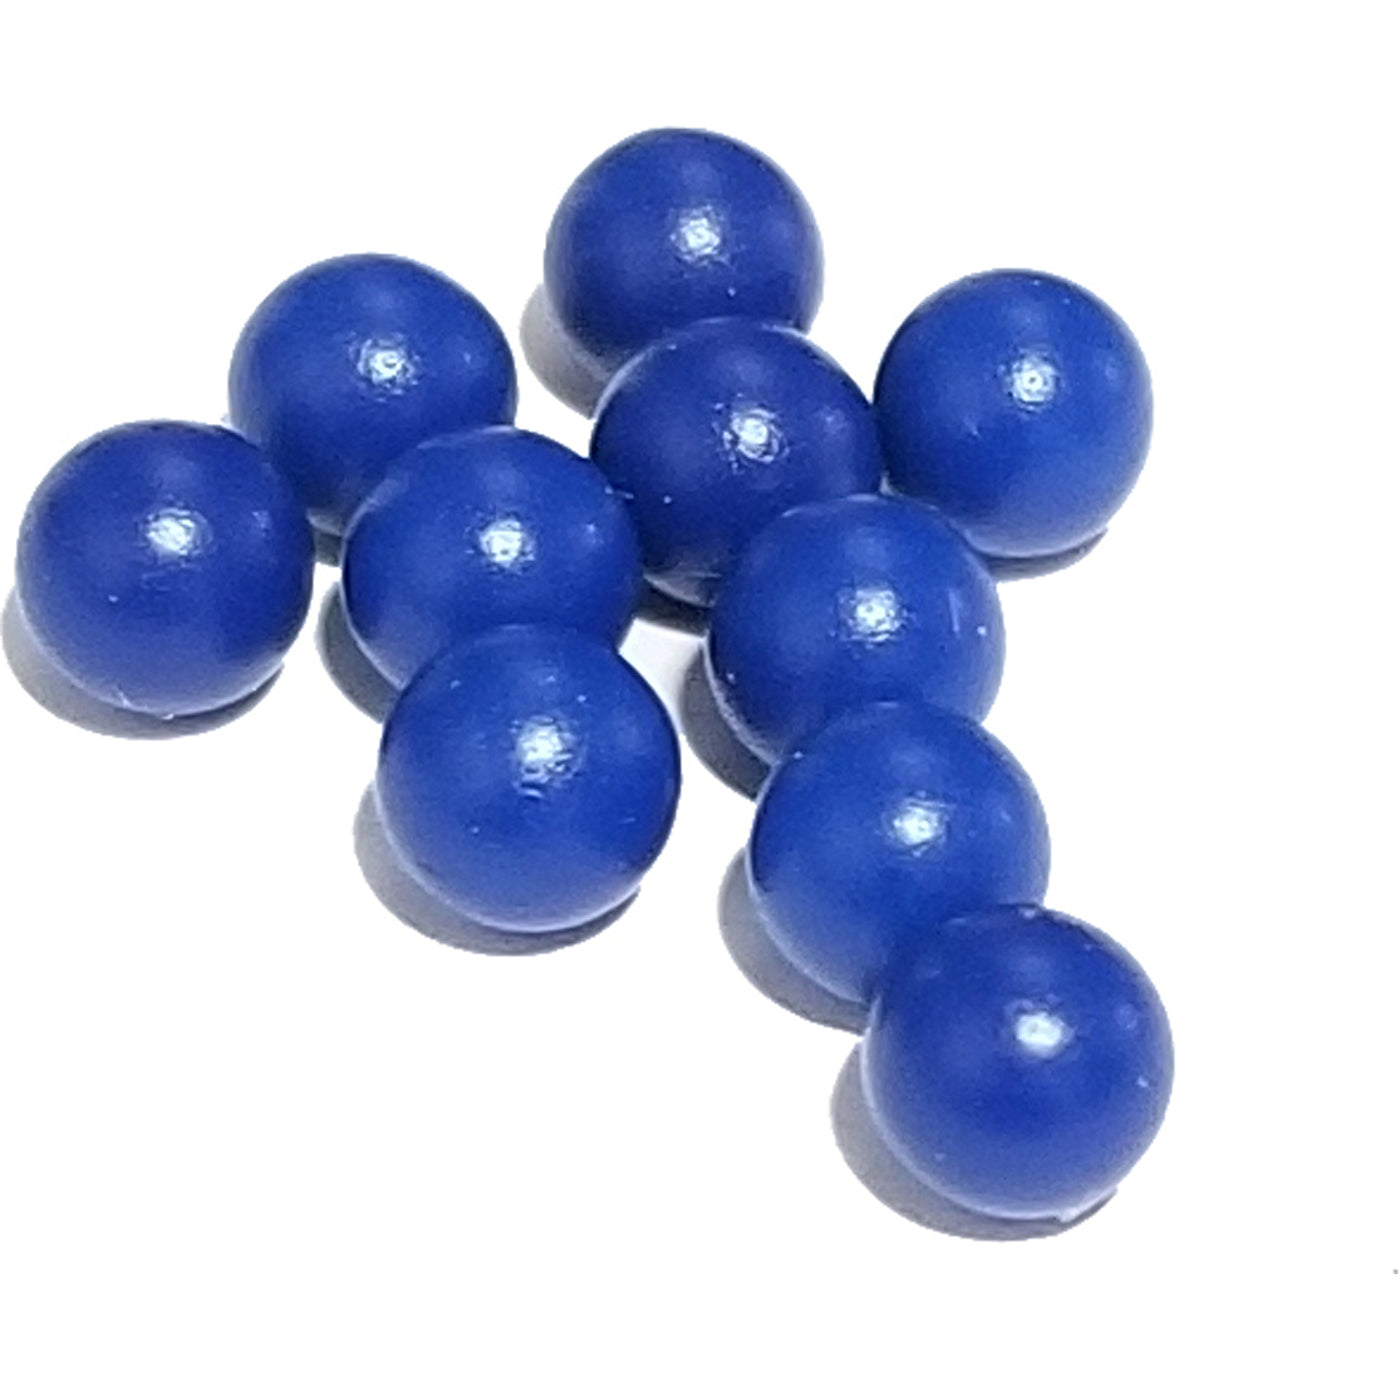 Nylon balls